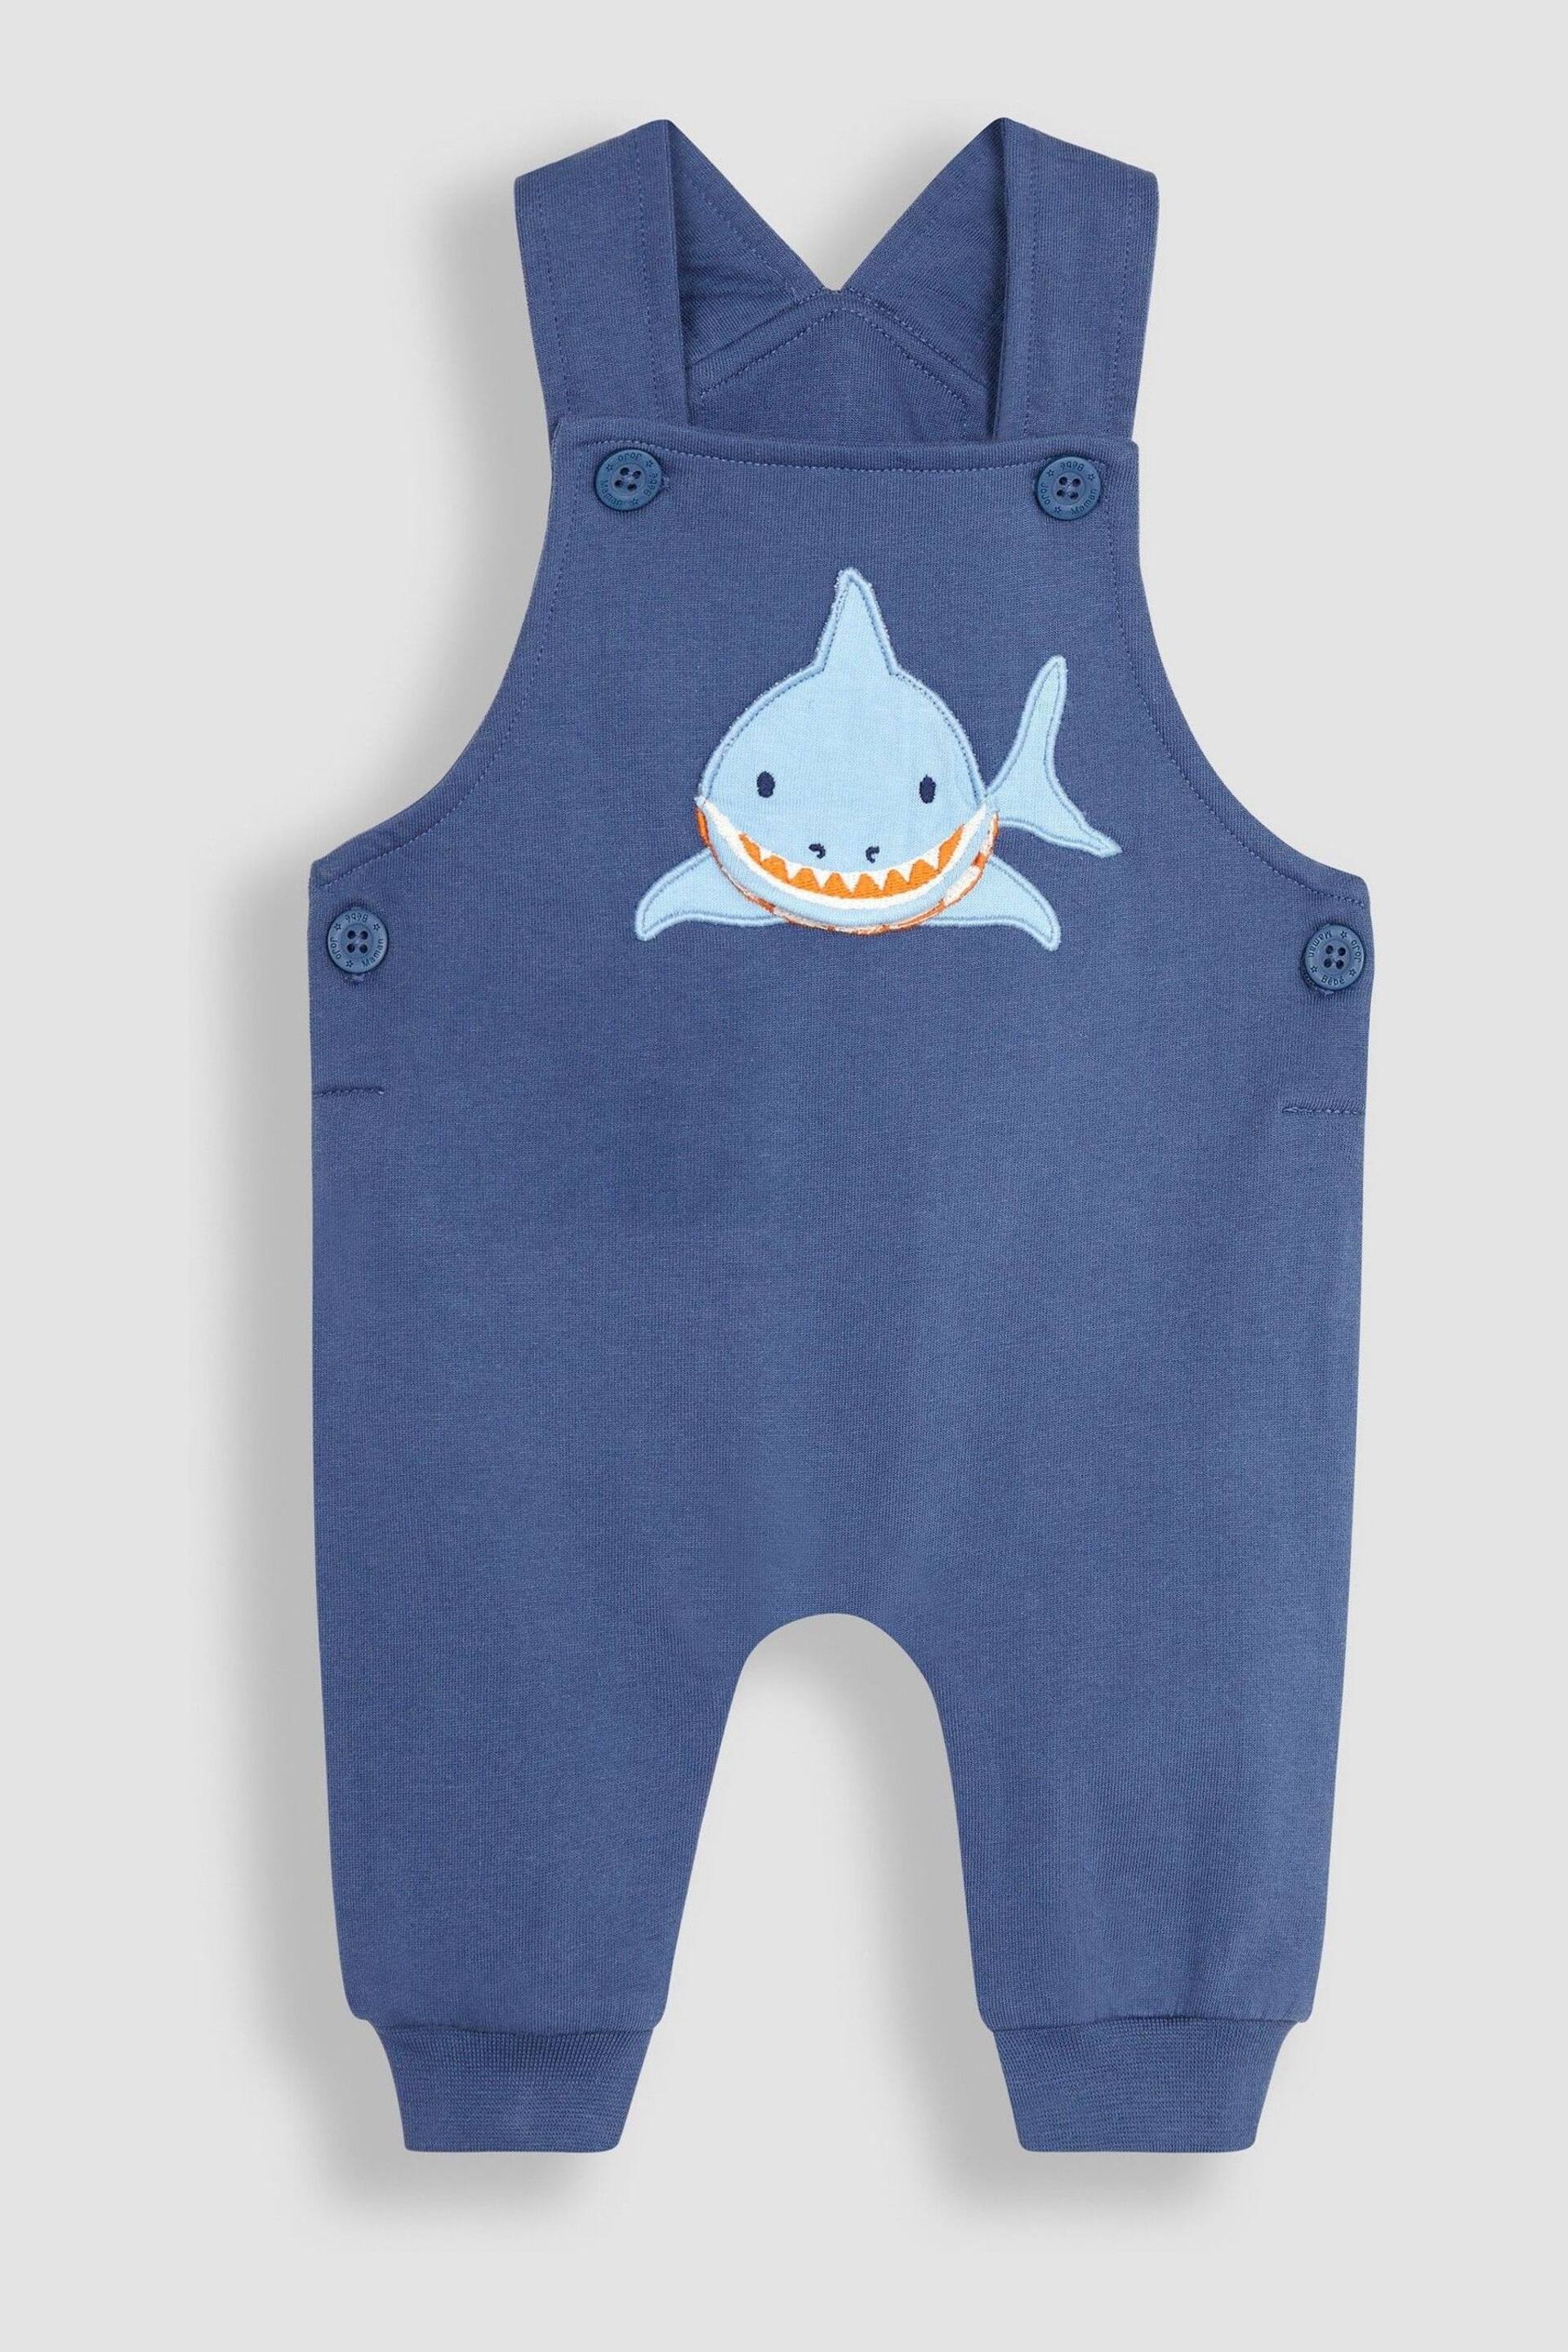 JoJo Maman Bébé Navy Blue Shark Appliqué Trouser Dungarees & T-Shirt Set - Image 3 of 7